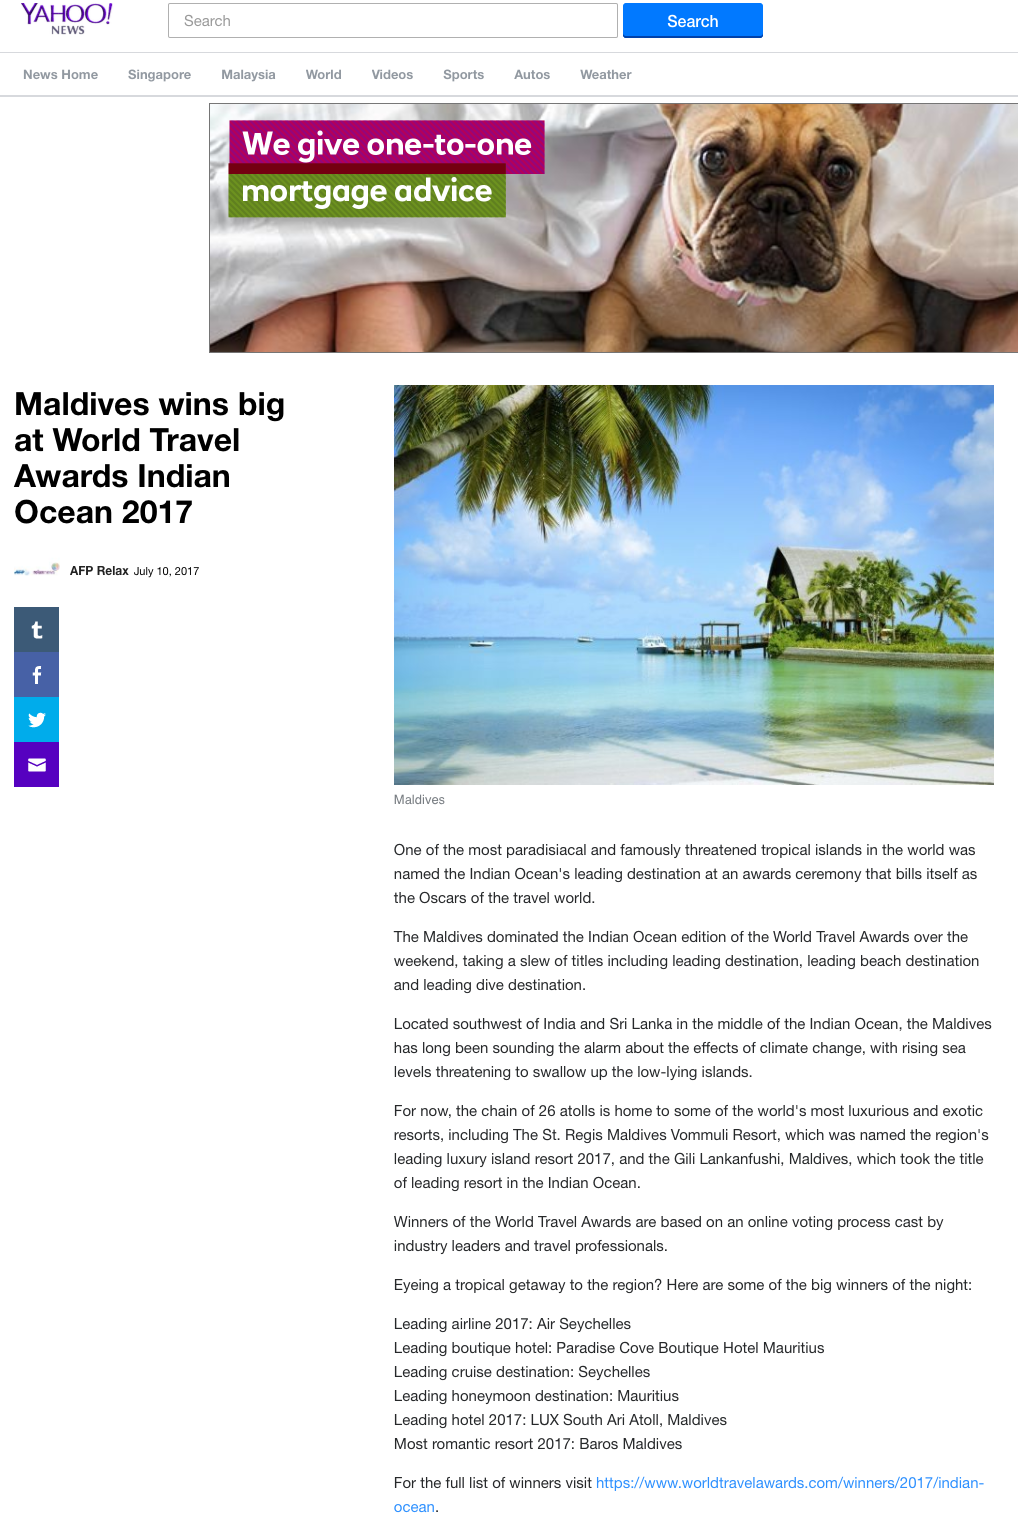 Maldives wins big at World Travel Awards Indian Ocean 2017